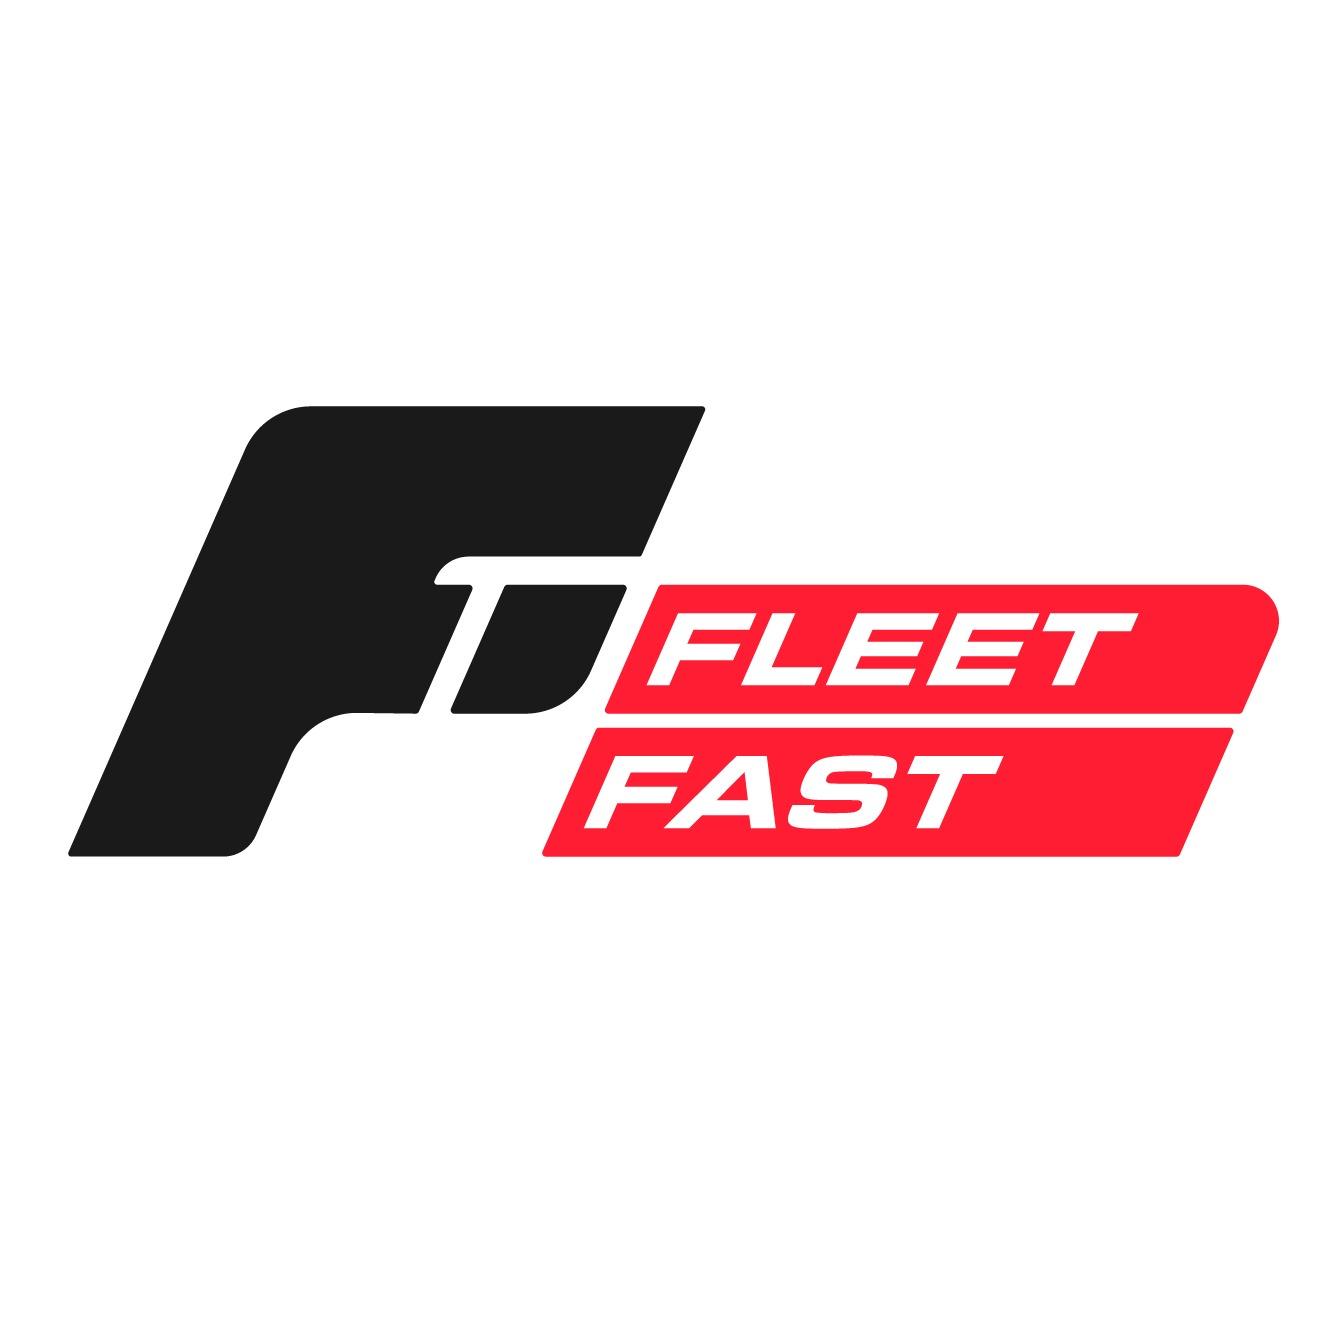 Fleet Fast Photo